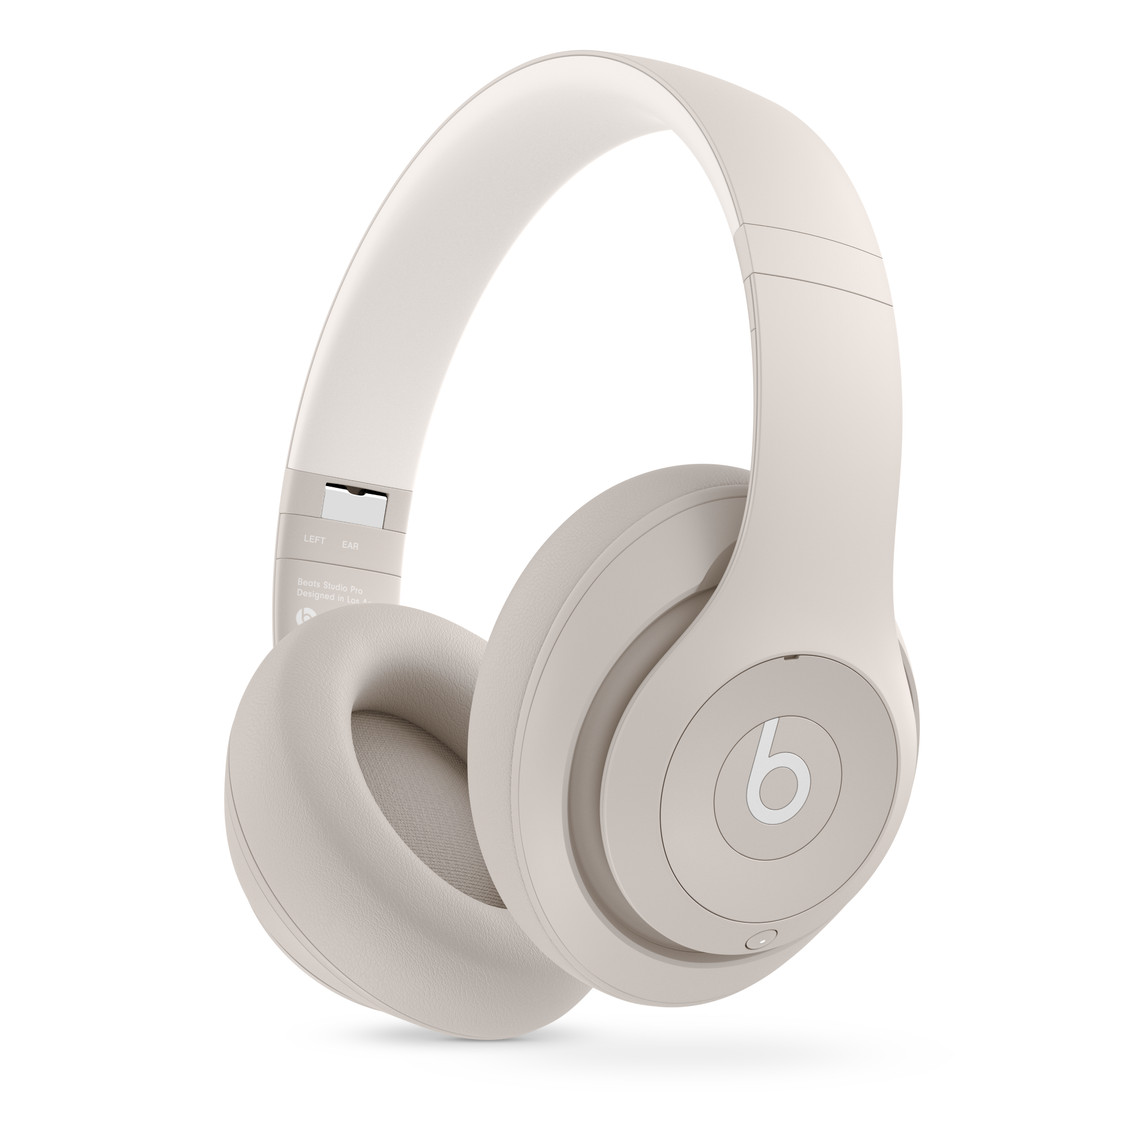 柔沙色 Beats Studio Pro 无线头戴式耳机，具有超柔软的皮革耳罩软垫，佩戴更加舒适耐用。